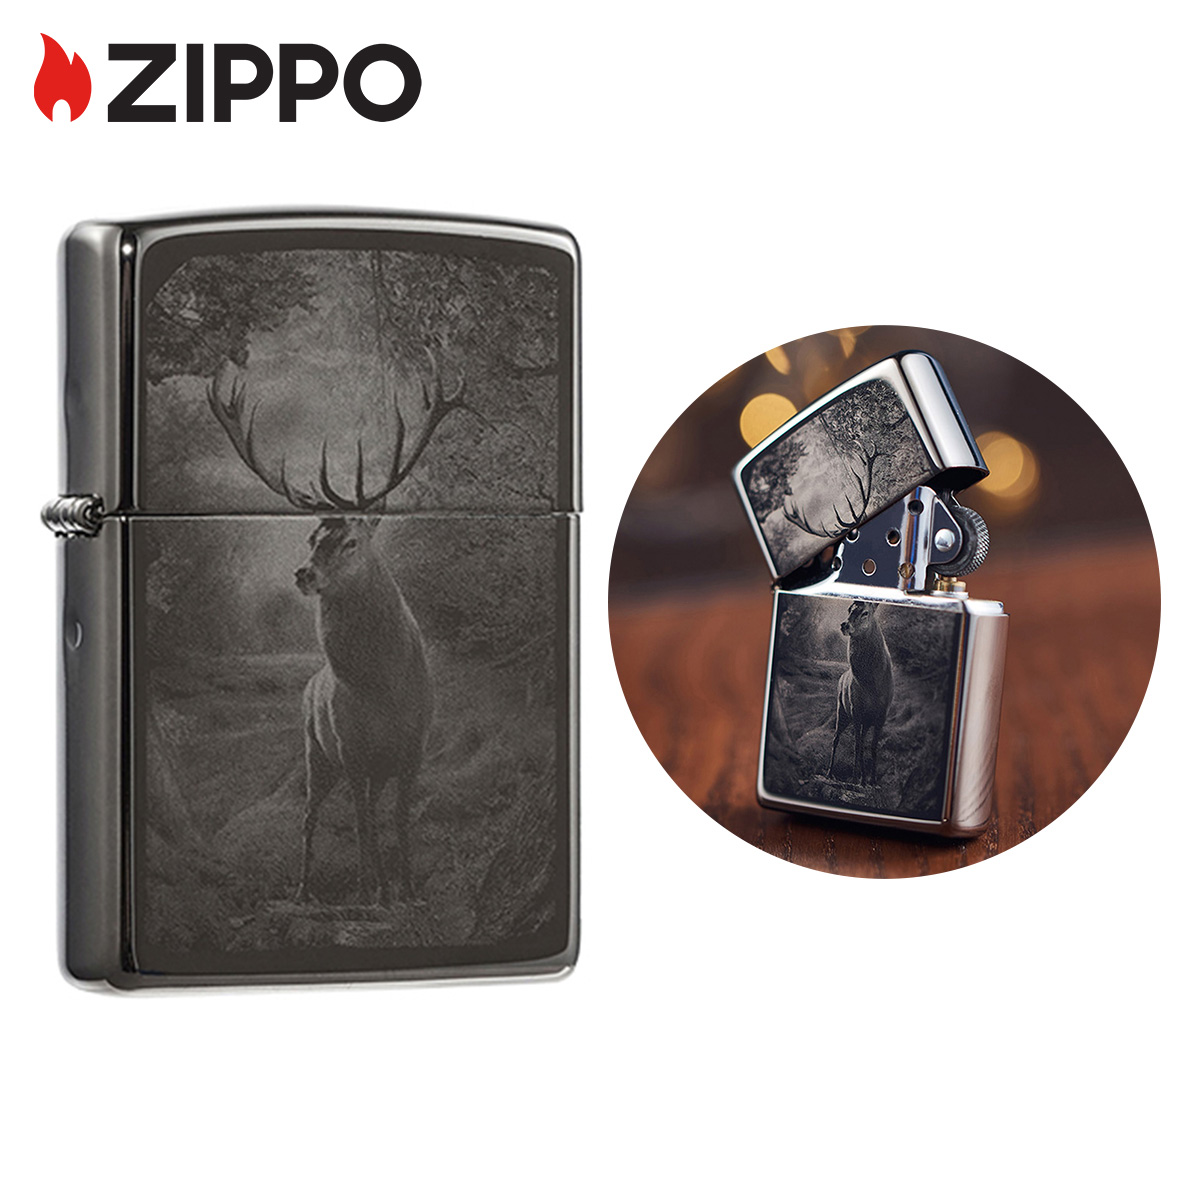 Zippo Deer In The Woods Design Black Ice Pocket Lighter 49059